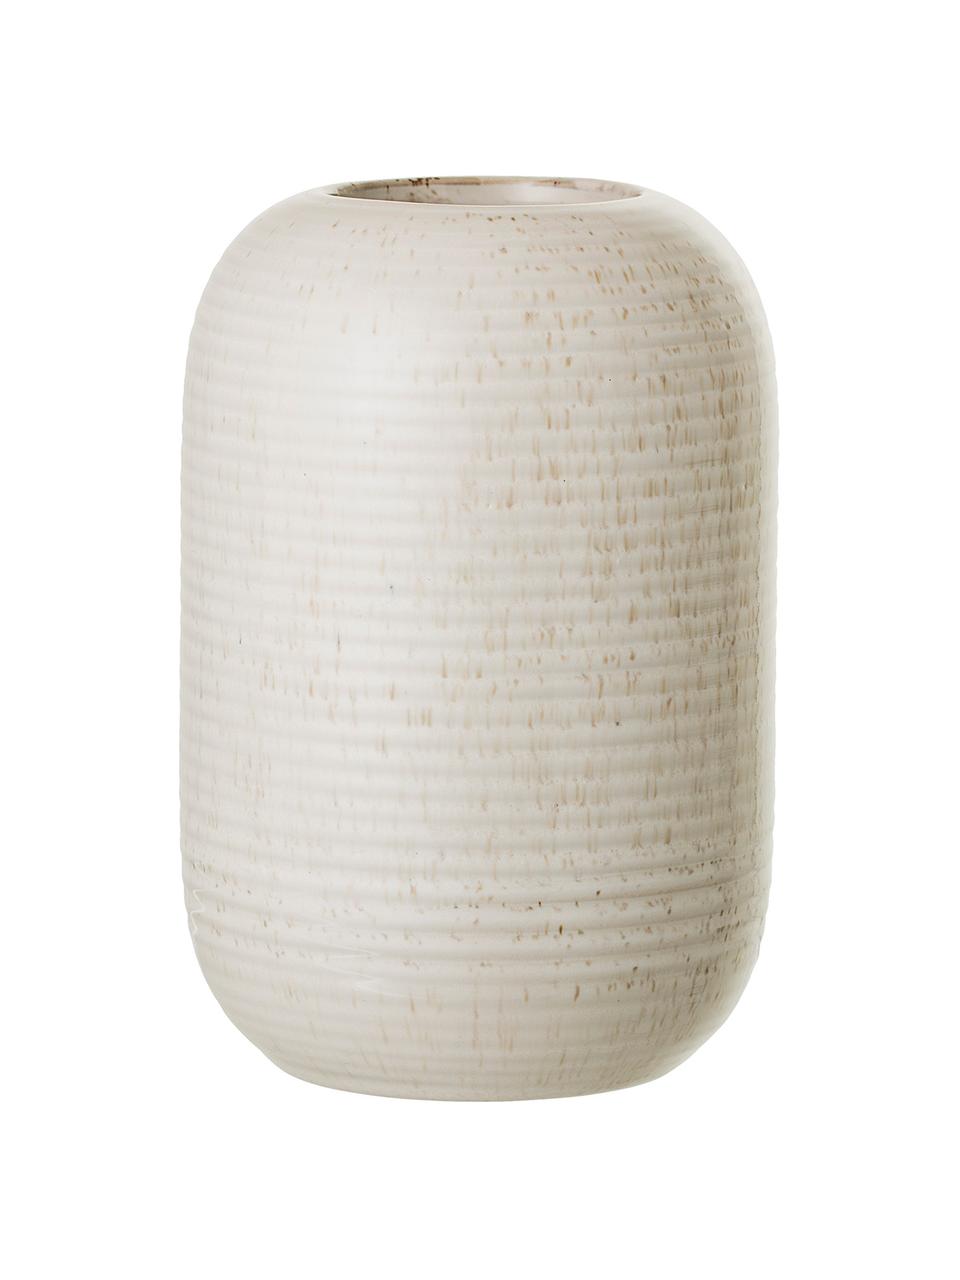 Béžová váza z kmeniny Aya, Kamenina, Béžová, Ø 11 cm, V 17 cm